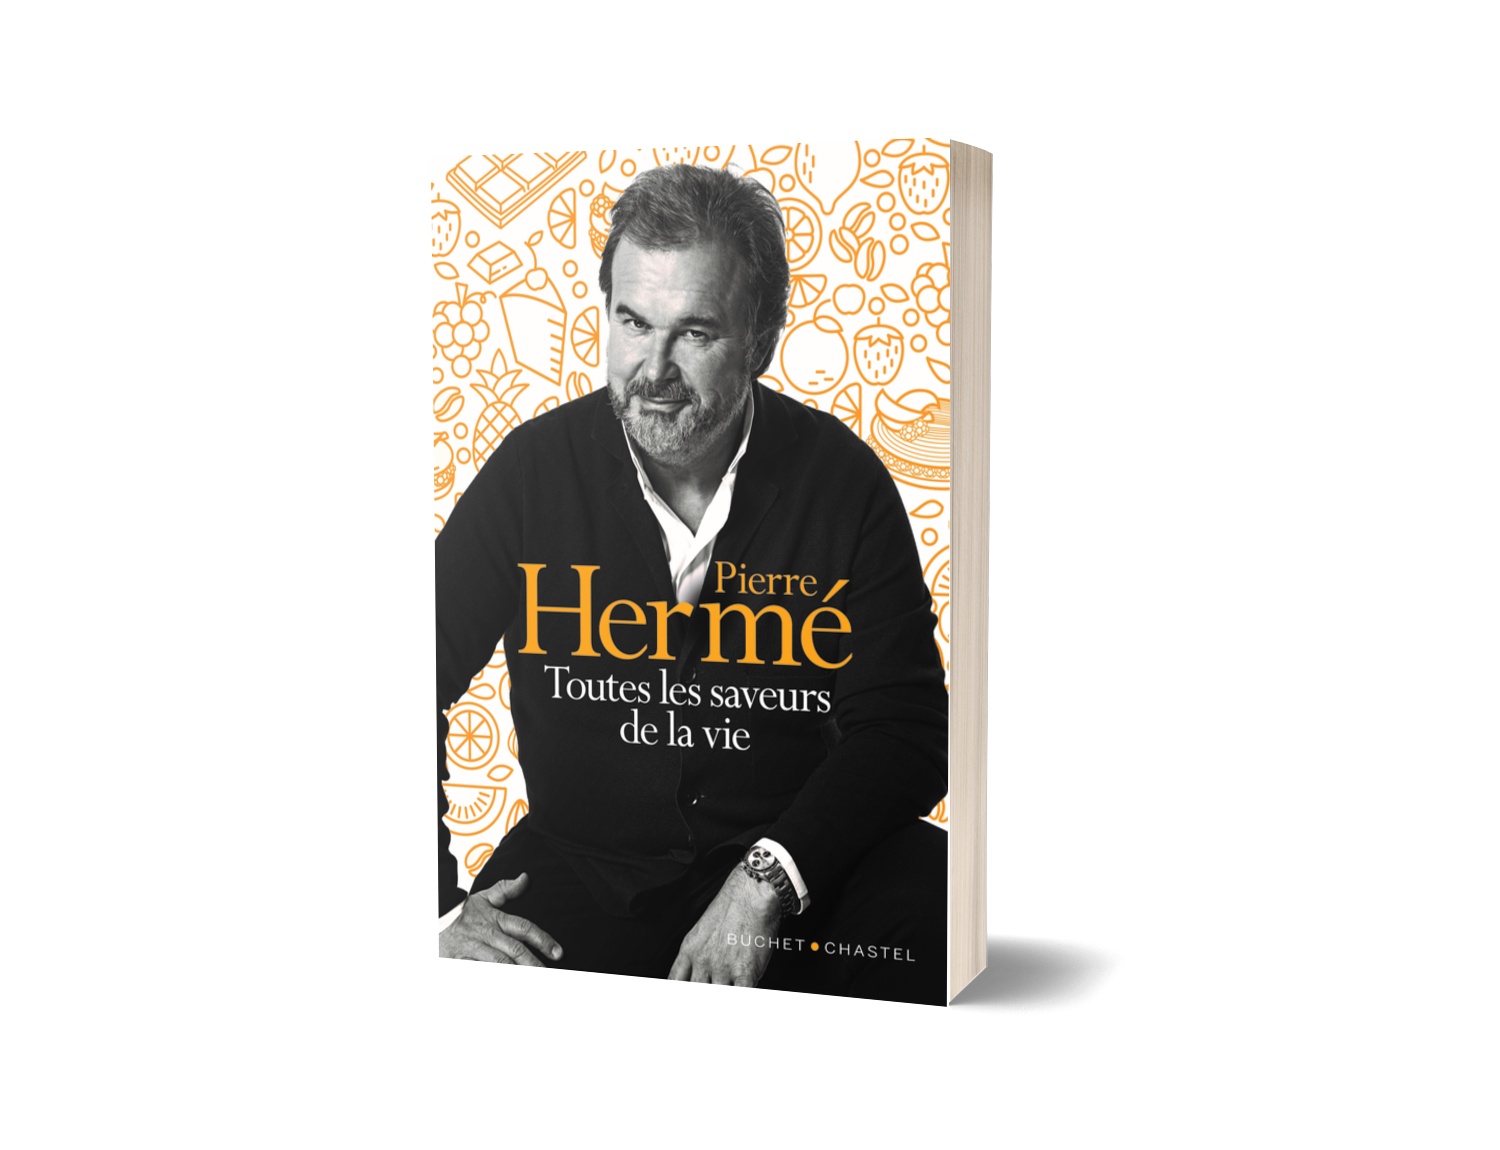 Pierre Hermé autobiographie